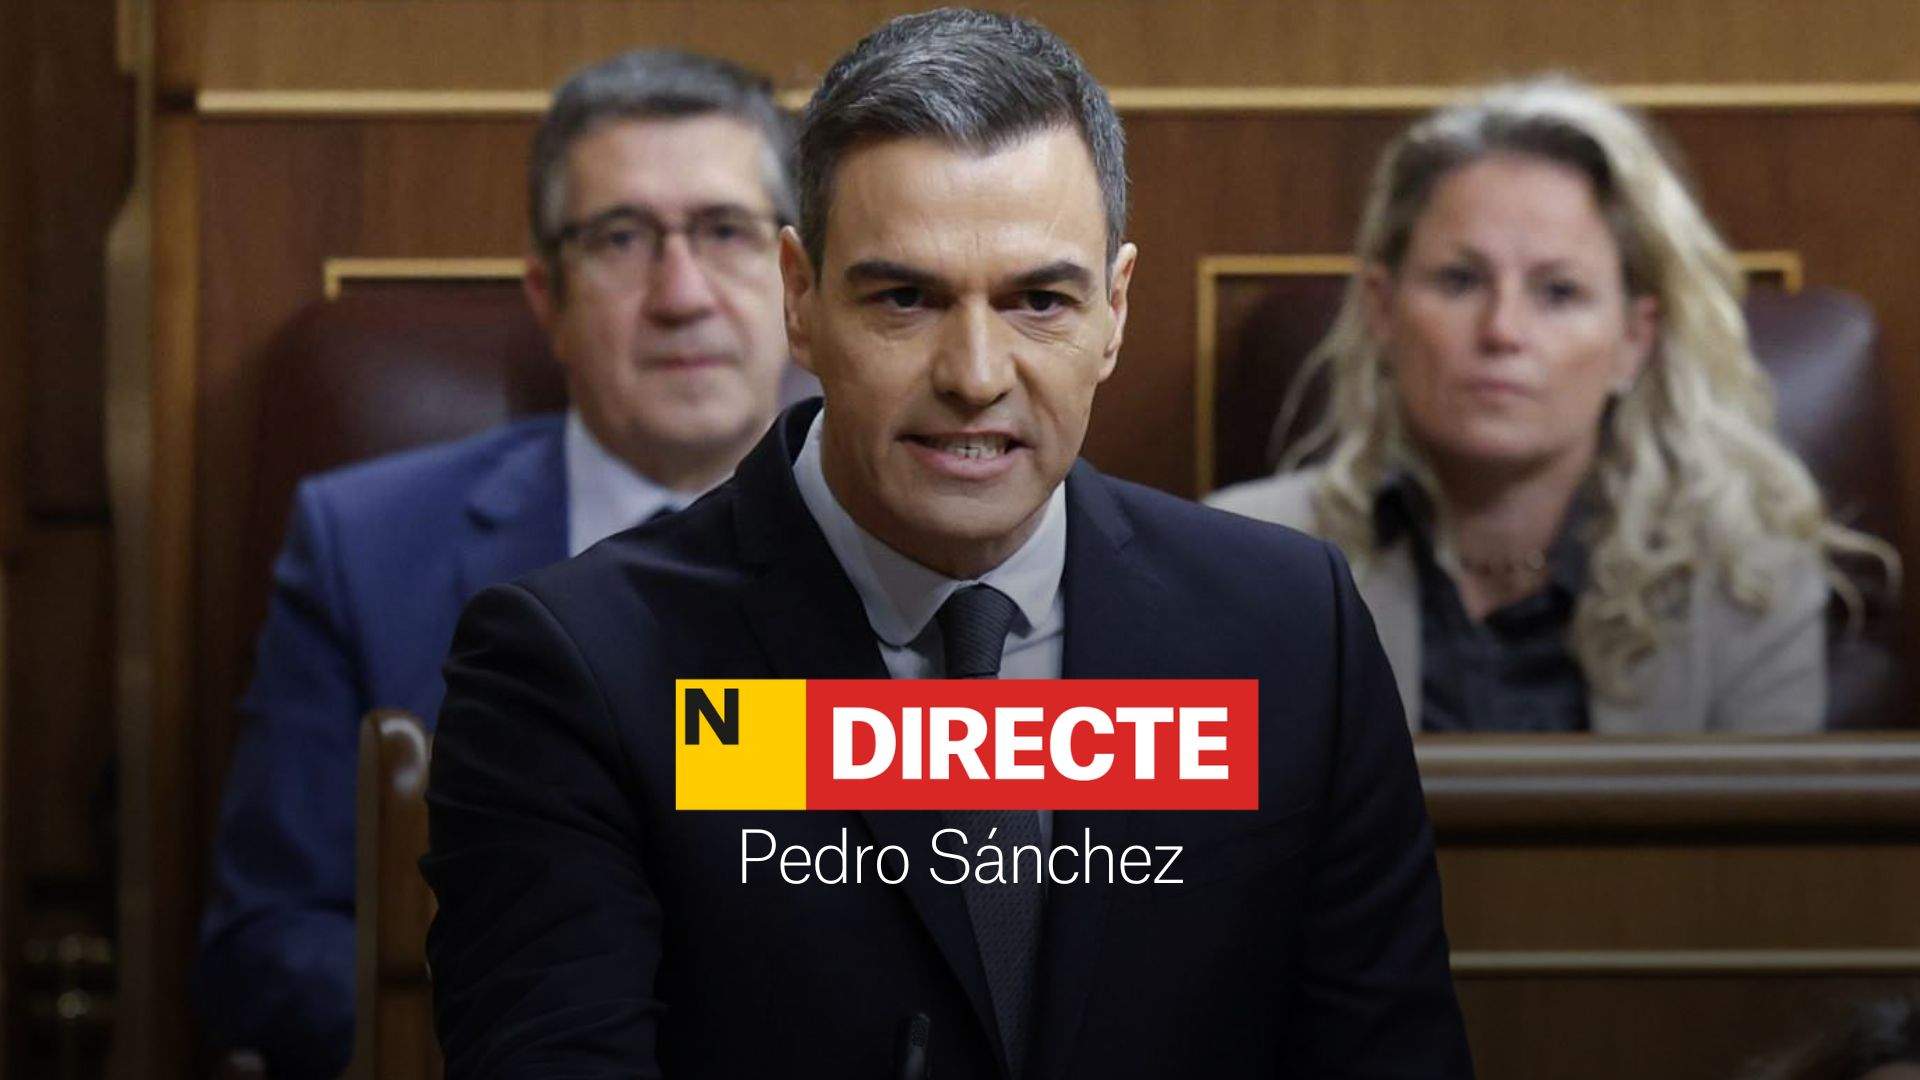 Pedro Sánchez comparece en el Congreso de los Diputados, DIRECTO